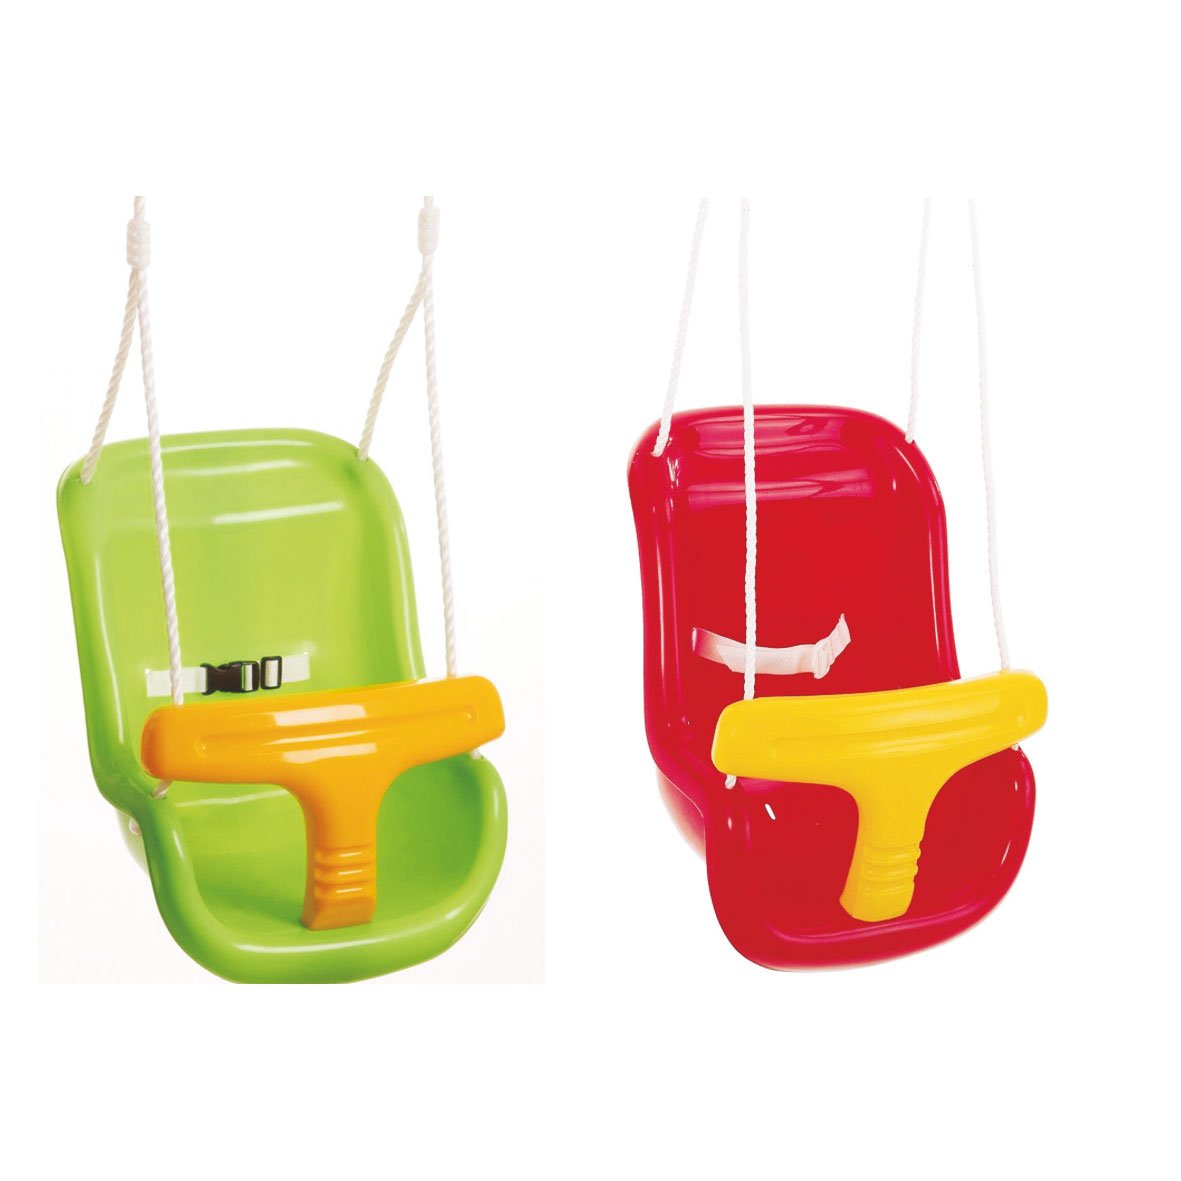 Baby-Sicherheitsschaukel, grün oder rot, Kunststoff